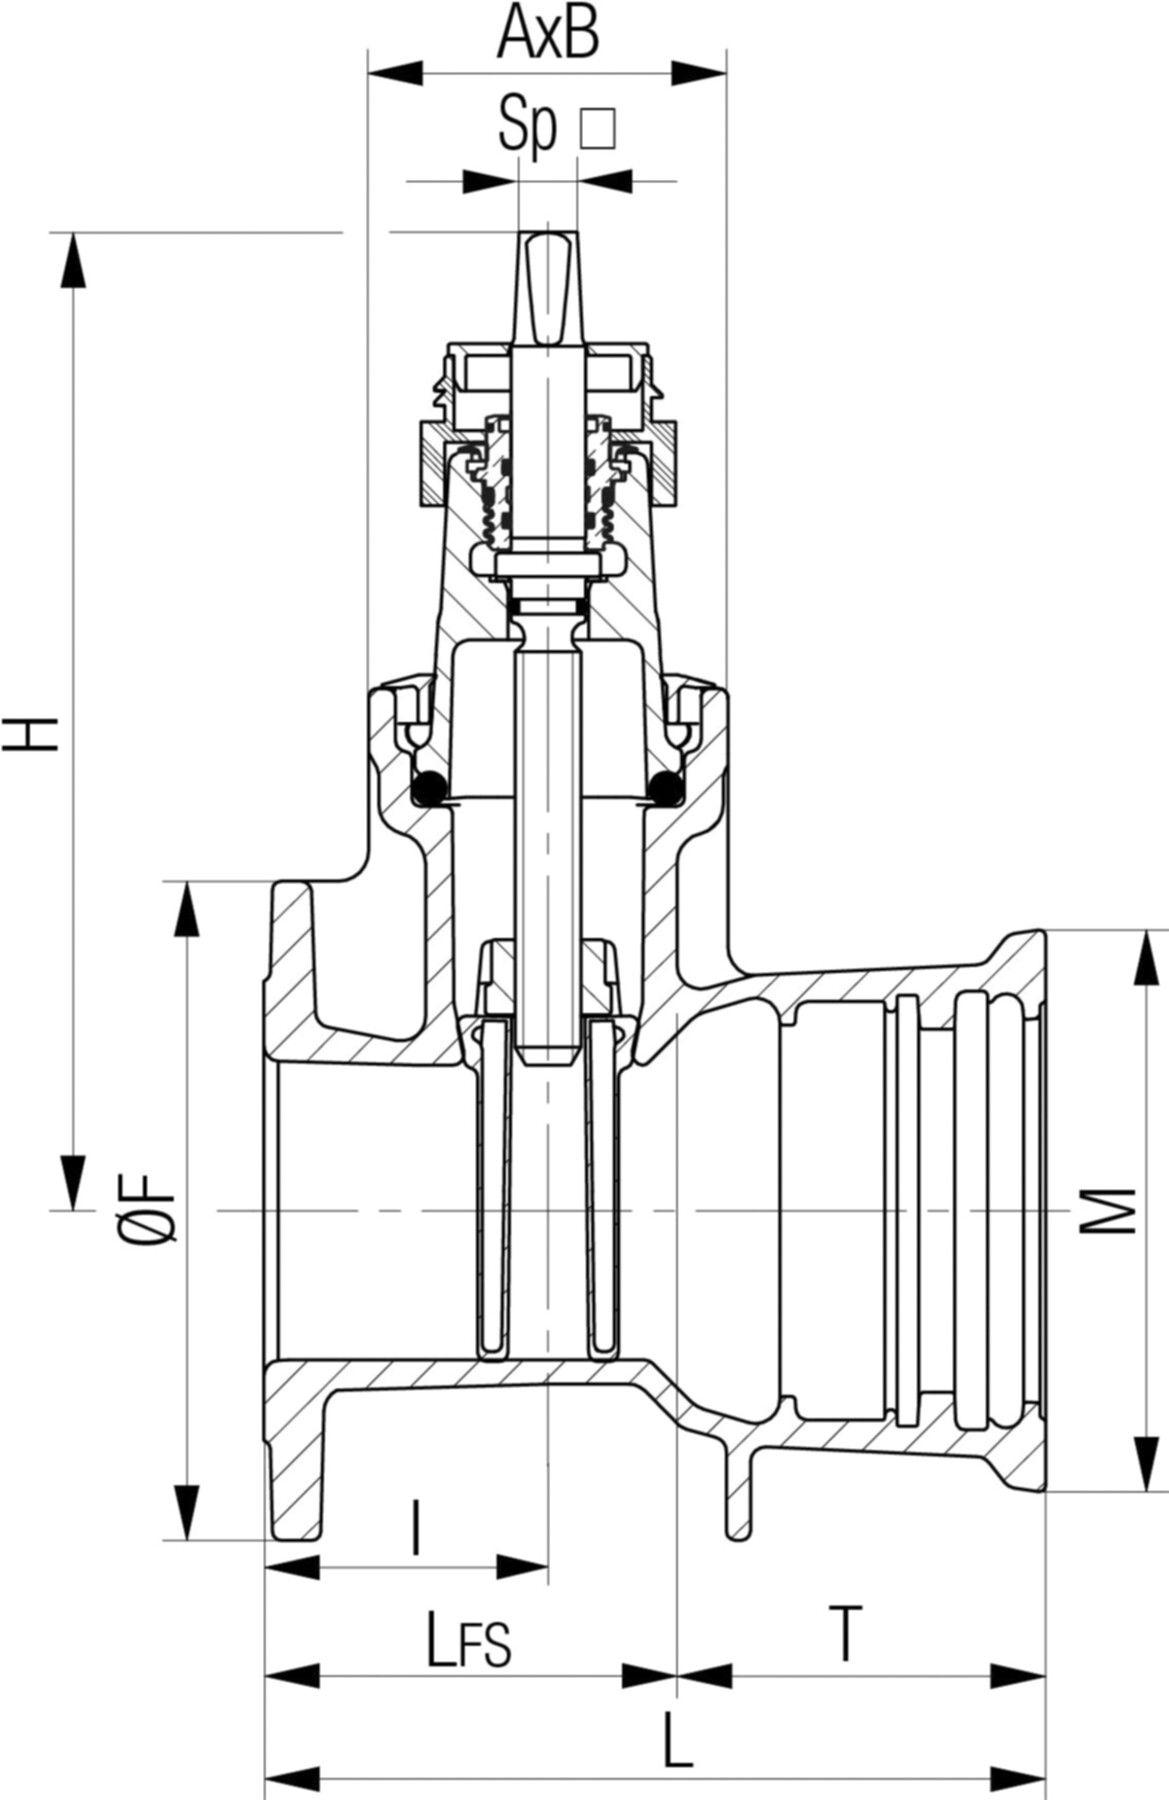 Flansch-/Steckmuffenschieber Fig. 5455 DN 125 PN 10/16 - Von Roll Armaturen